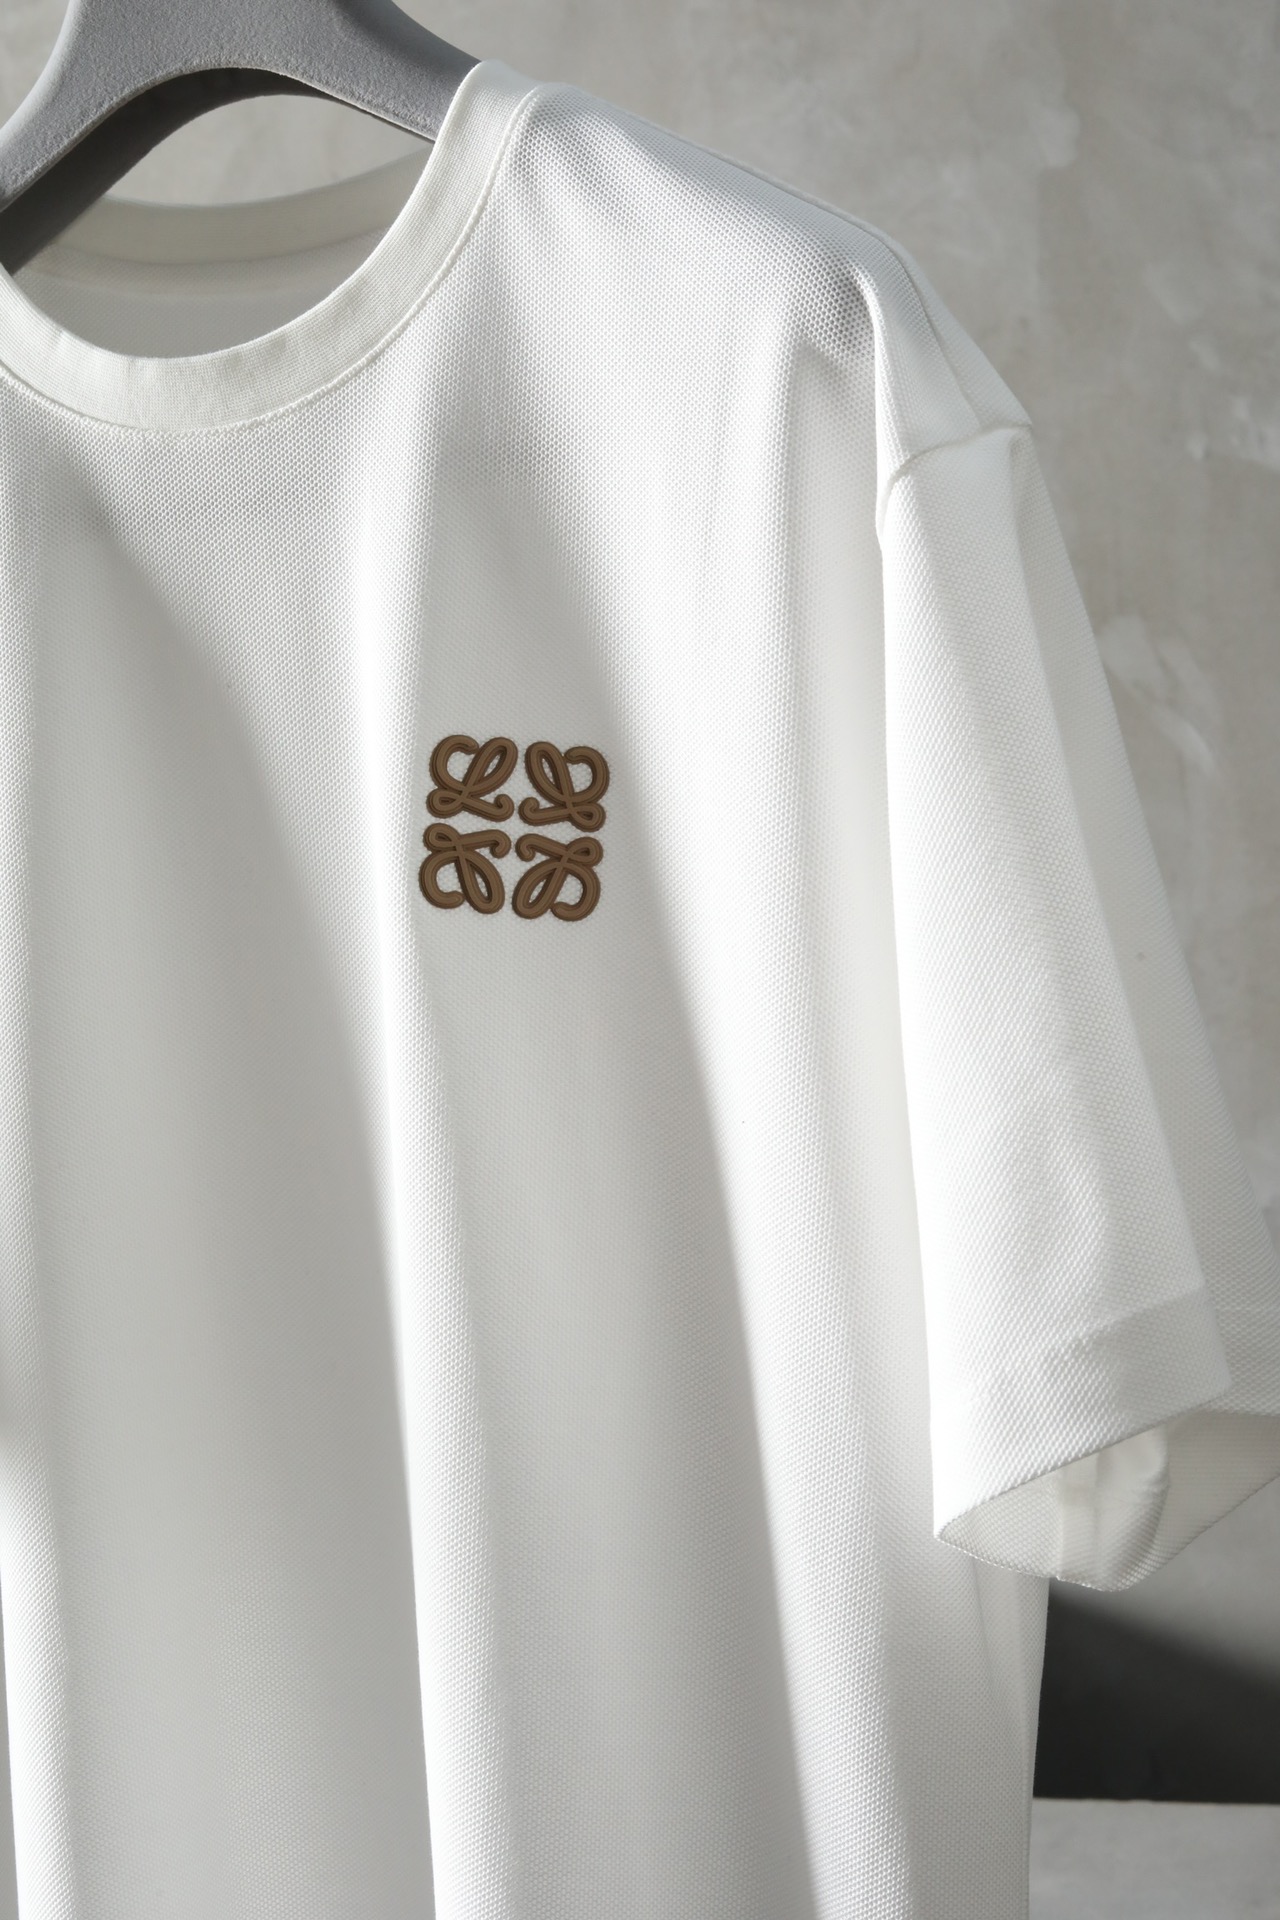 春夏新品LO*E*WE圆领T恤经典的黑白双色微宽松版型贴近lw时尚简约的风格和设计语言来自LW日本线的独